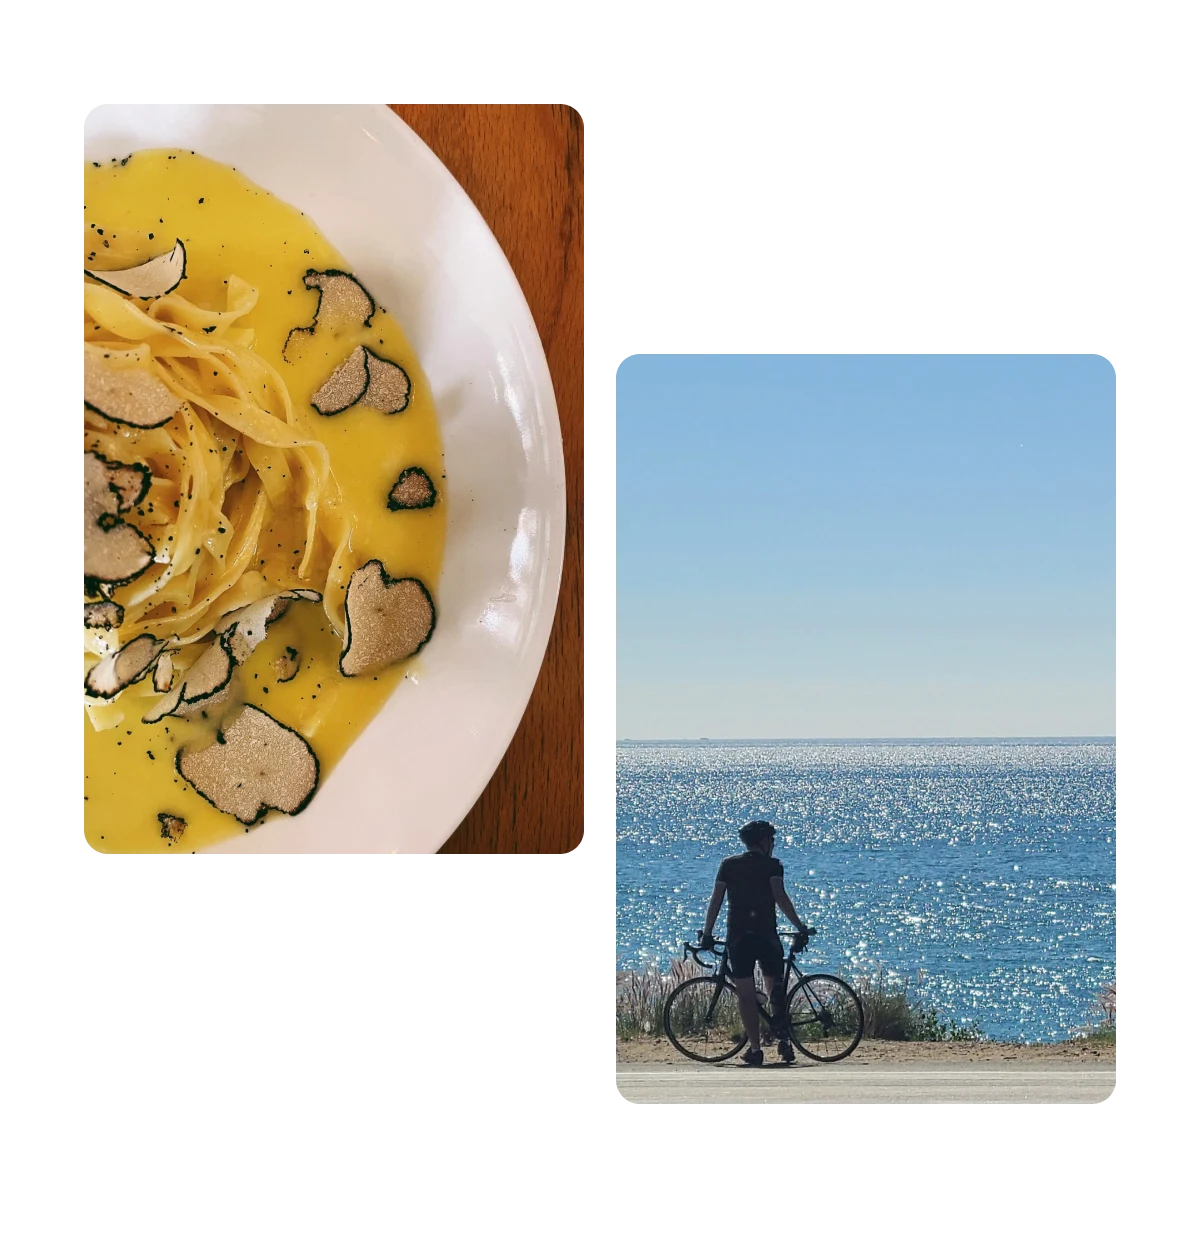 Dois Pins, um prato com massa trufada, um ciclista olhando o mar